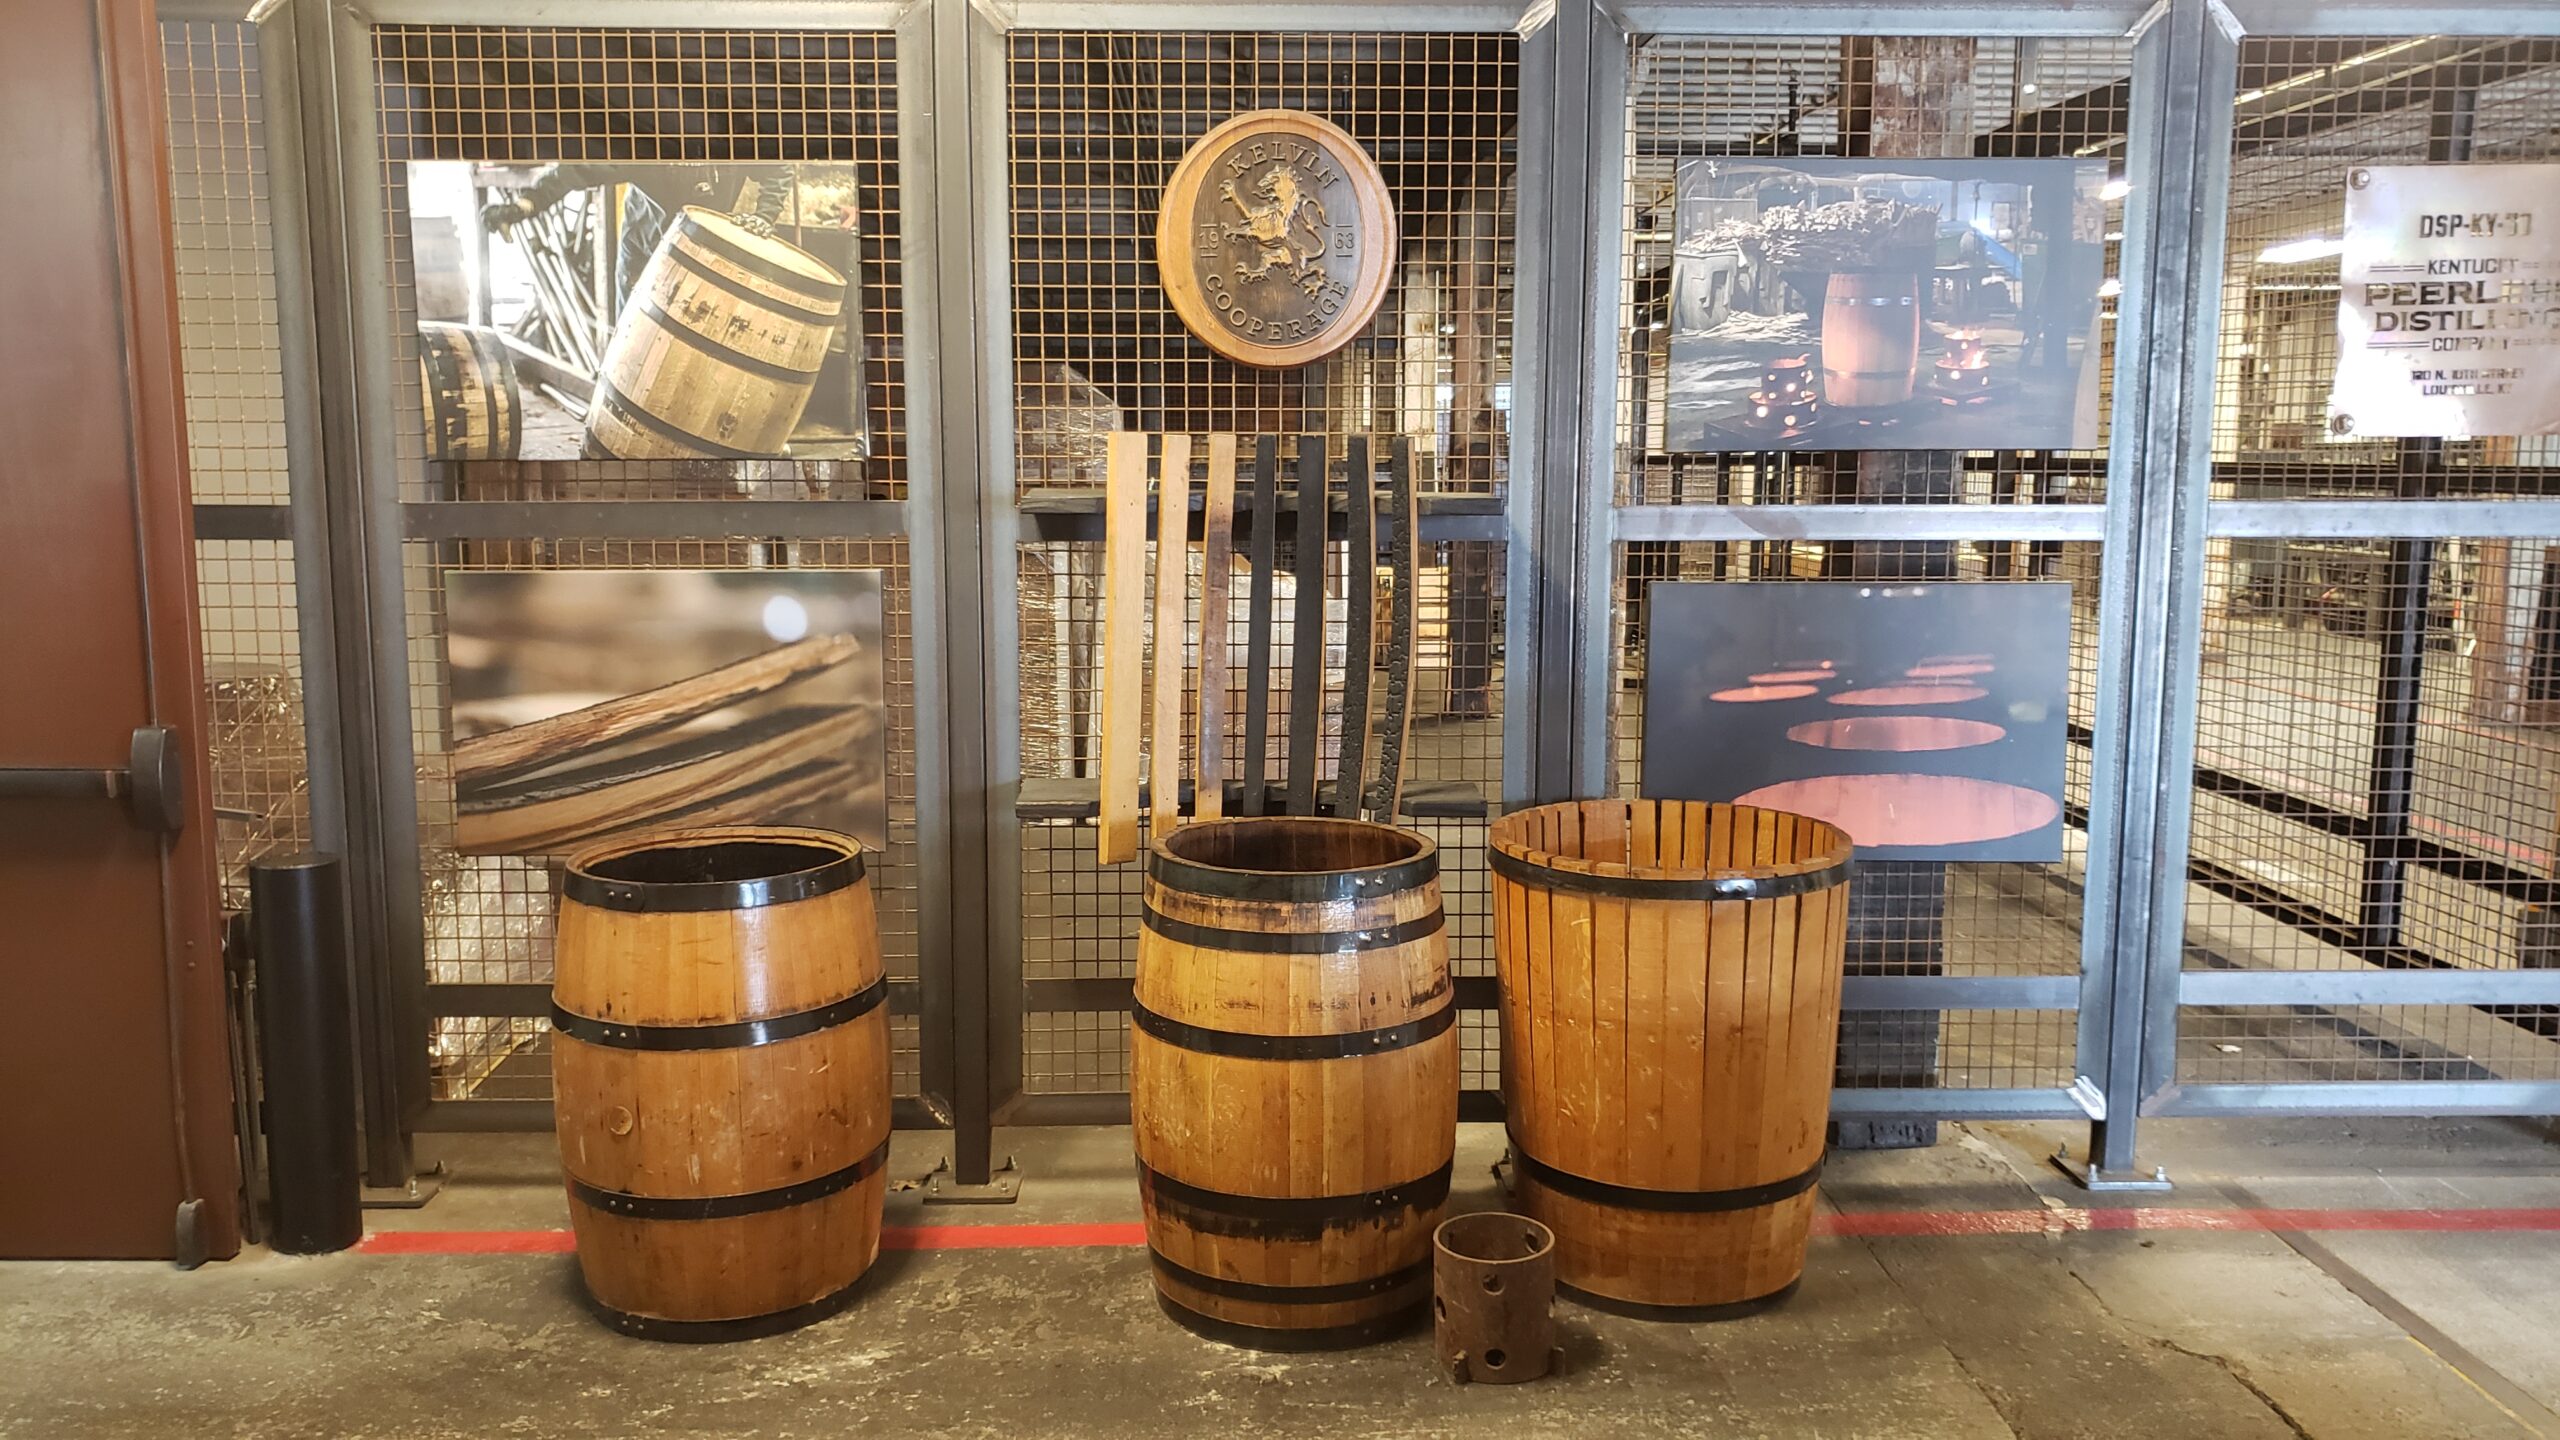 Kentucky Peerless Distillery Tour - Barrels and Charring